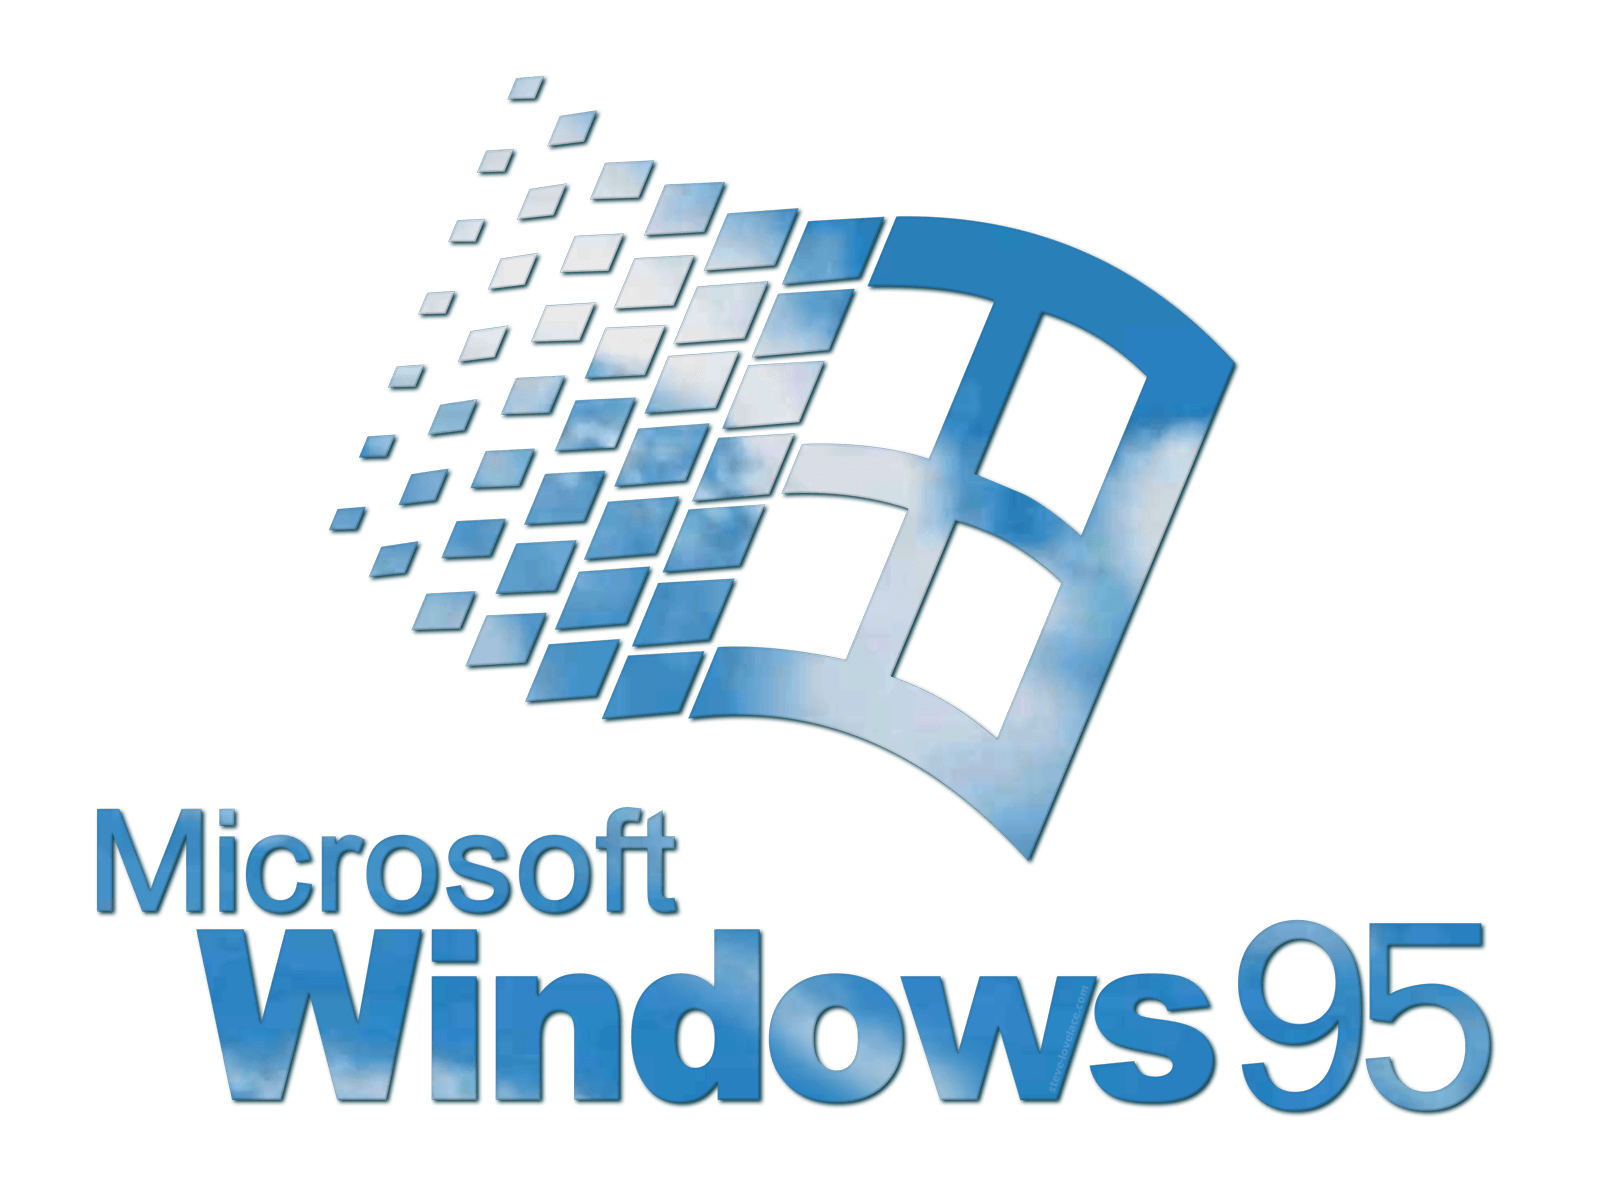 Windows 95 Logo - Starting Up Windows 95 — Steve Lovelace